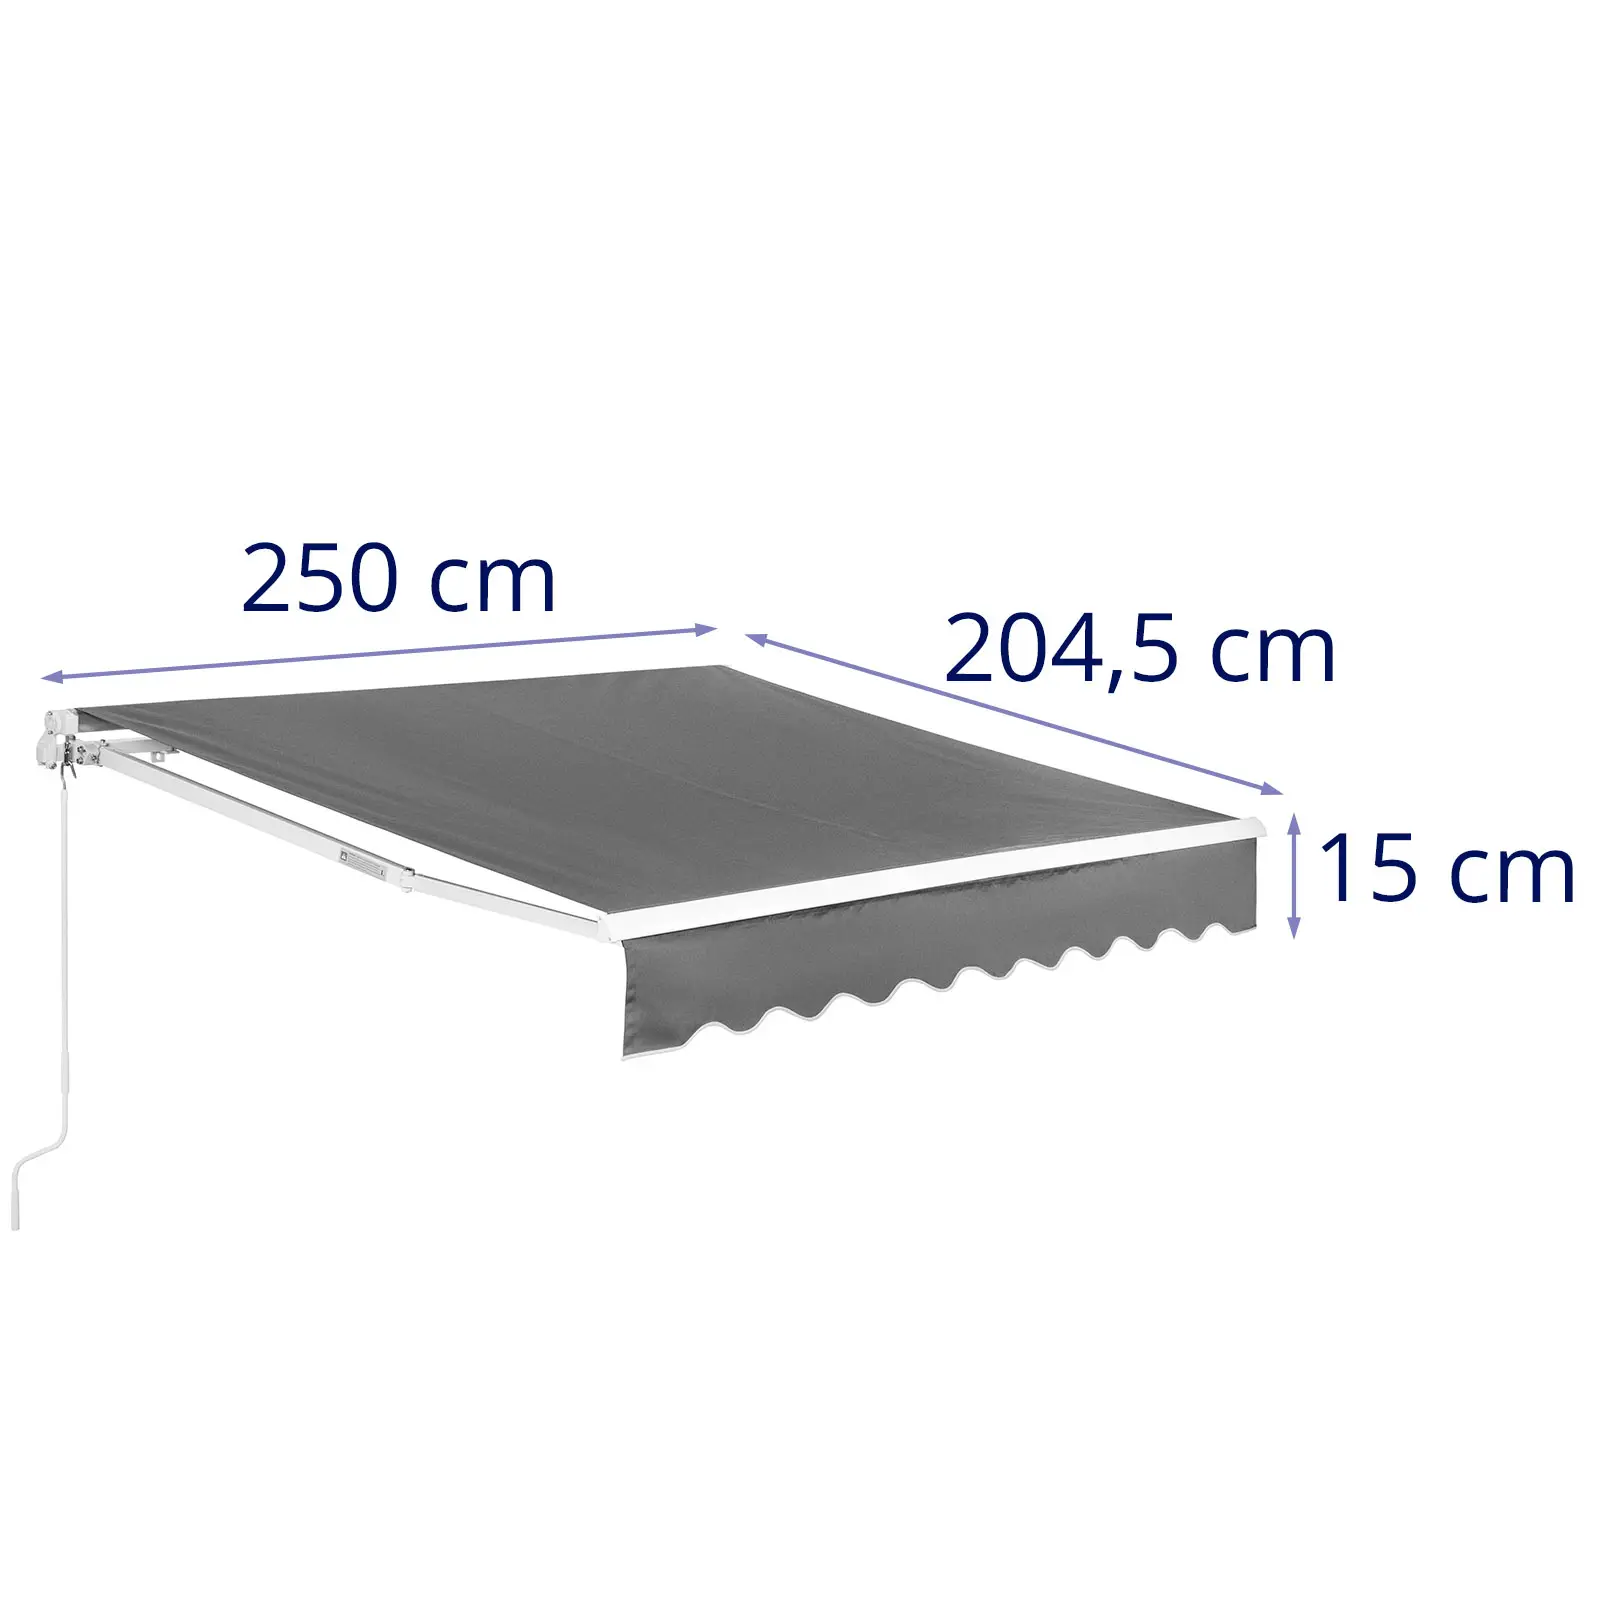 Seconda Mano Tenda da sole - Per balcone, terrazza - Manuale - 200 x 250 cm - Resistente ai raggi UV - Grigio antracite